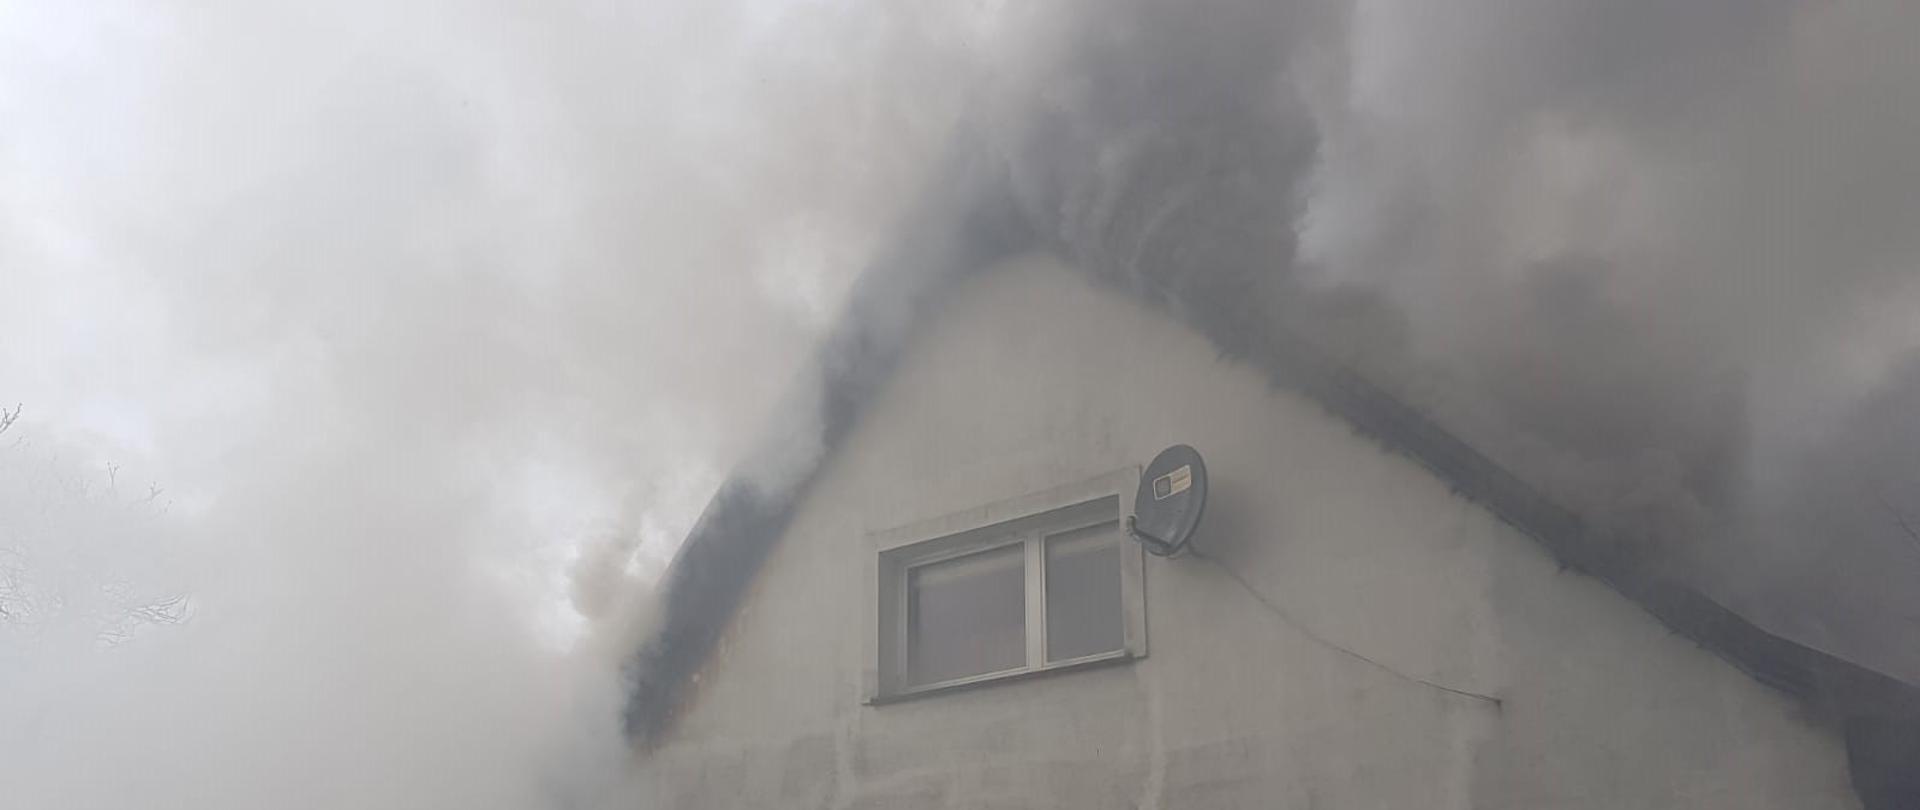 Wydobywające się kłęby szarobrunatnego dymu spod dachu. Przed budynkiem strażak z prądem gaśniczym.